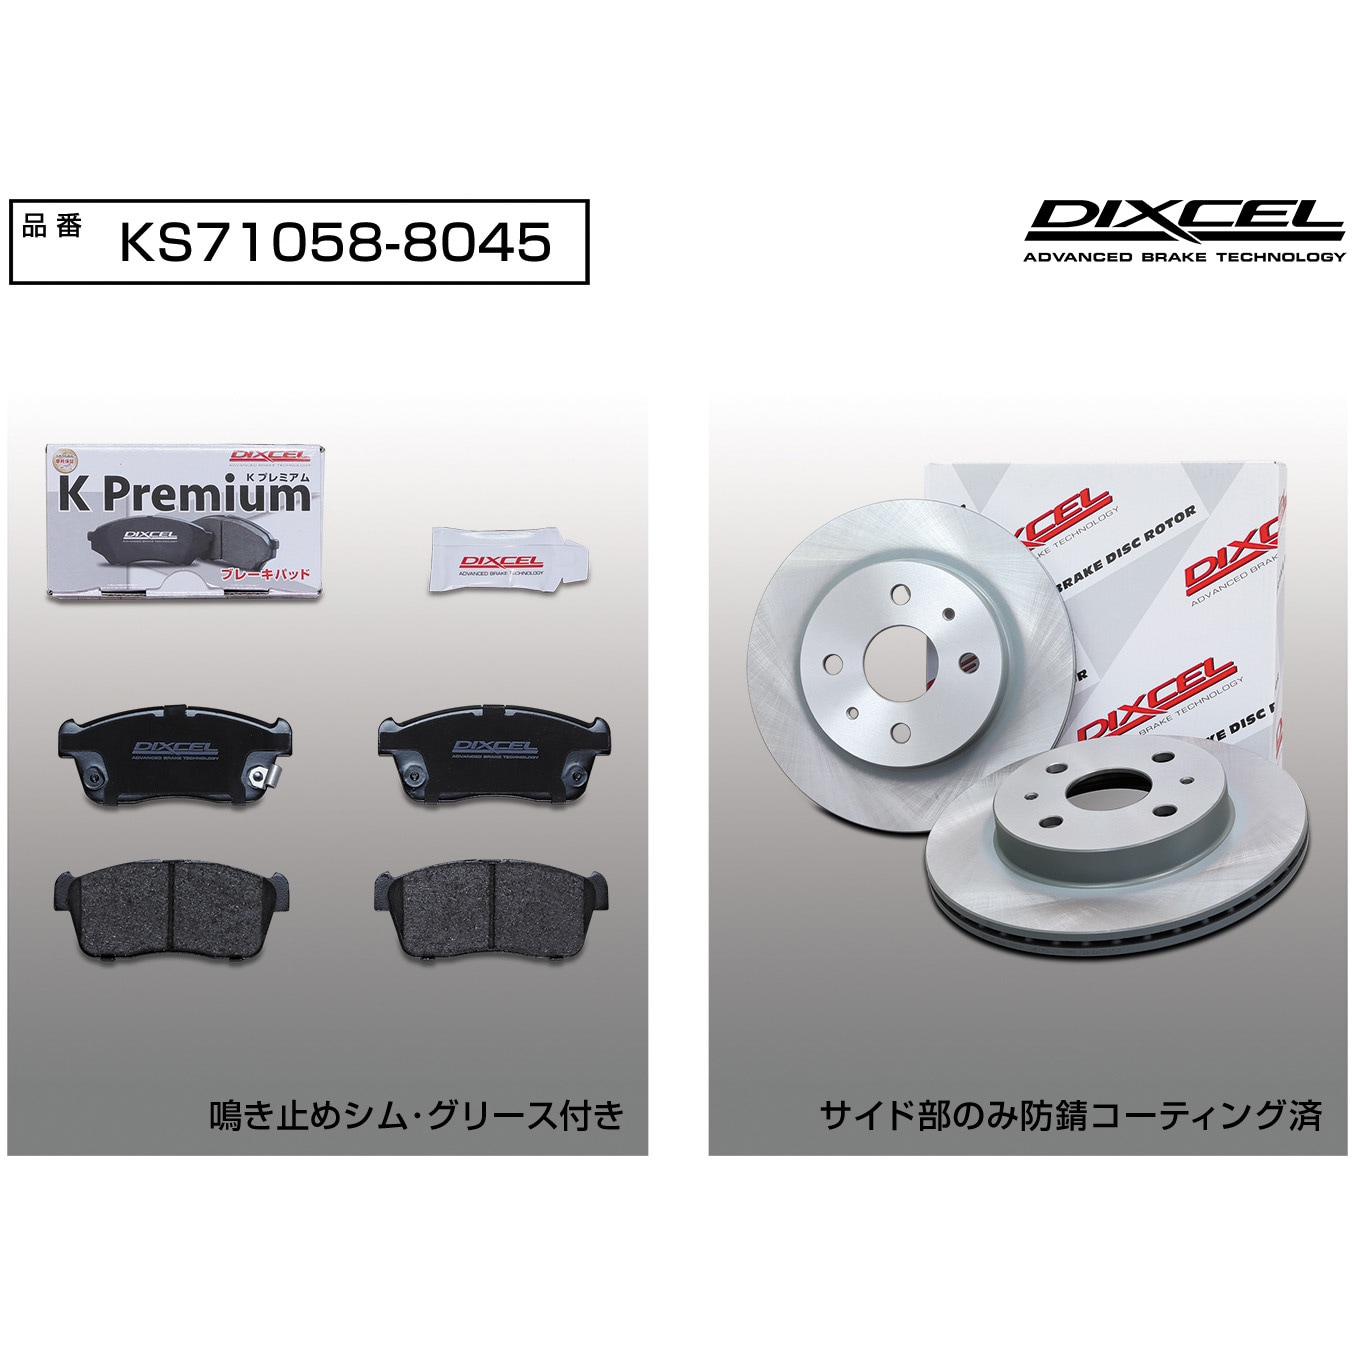 KS71058-8045 ブレーキパッドKP+ローターKDセット(KSタイプ) 1セット 